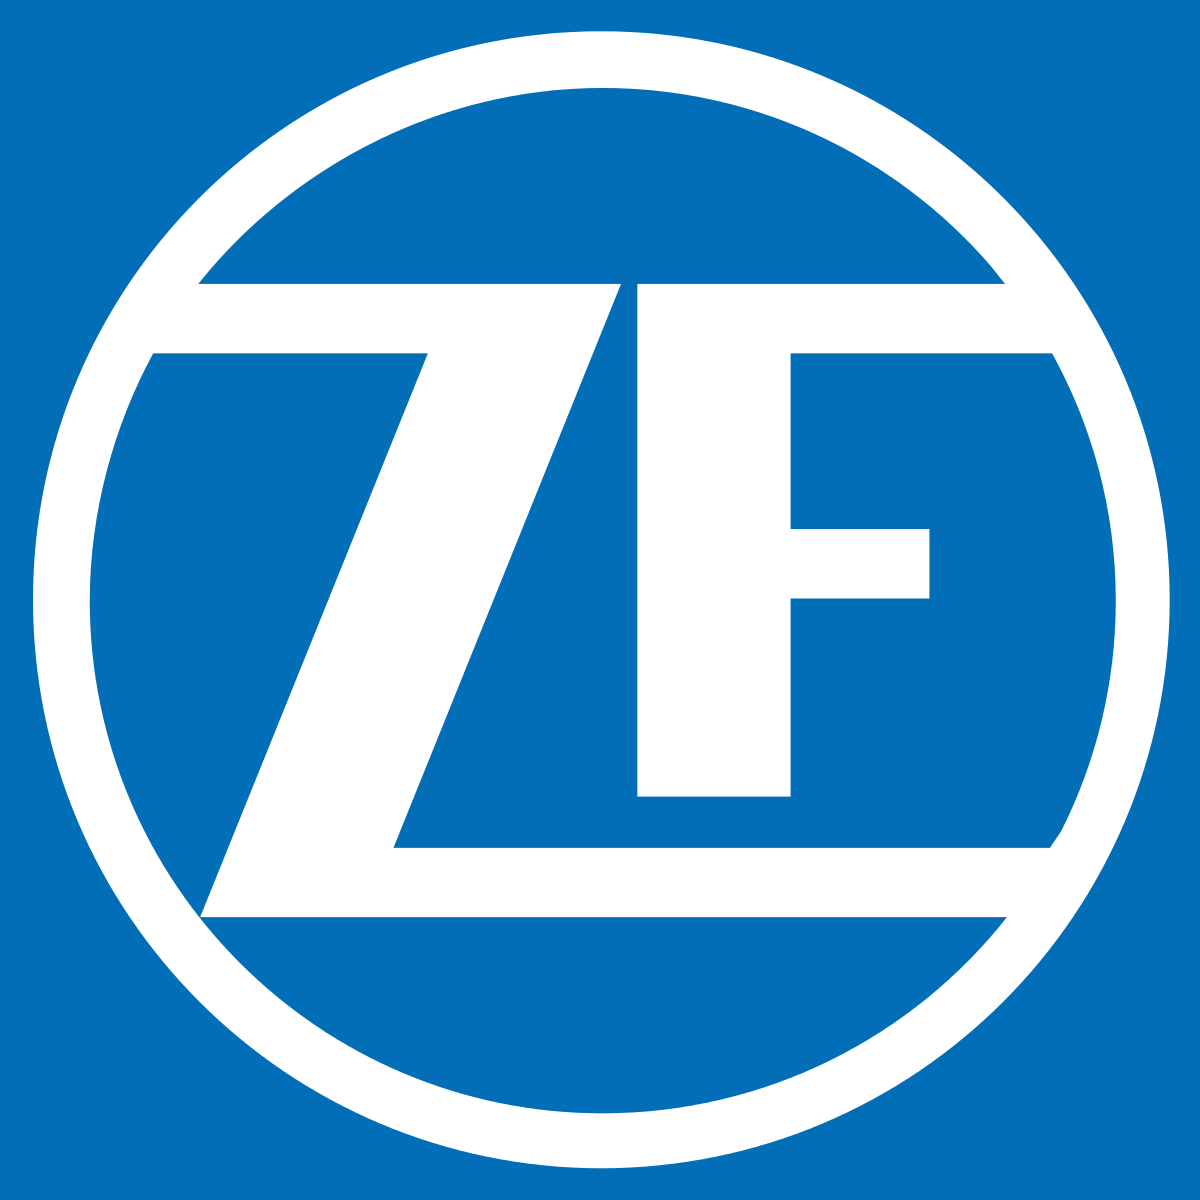 ZF Lemforder Logo - ZF Friedrichshafen